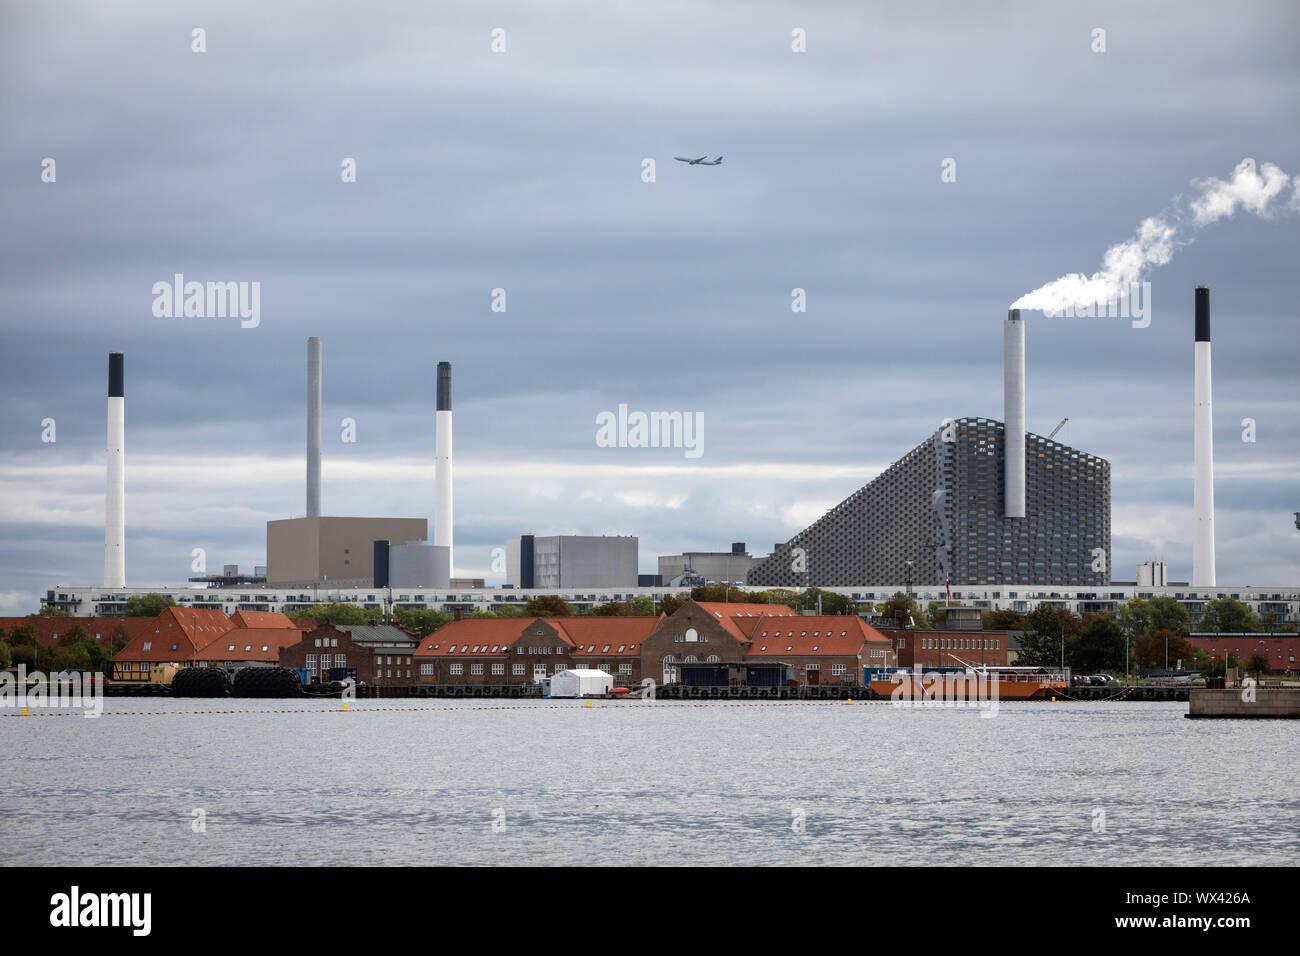 Ein Flugzeug fliegt über den Amager bakke Kombiniert tnv Anlage und Skipiste in Kopenhagen, Dänemark, mit dem Hafen im Vordergrund. Stockfoto